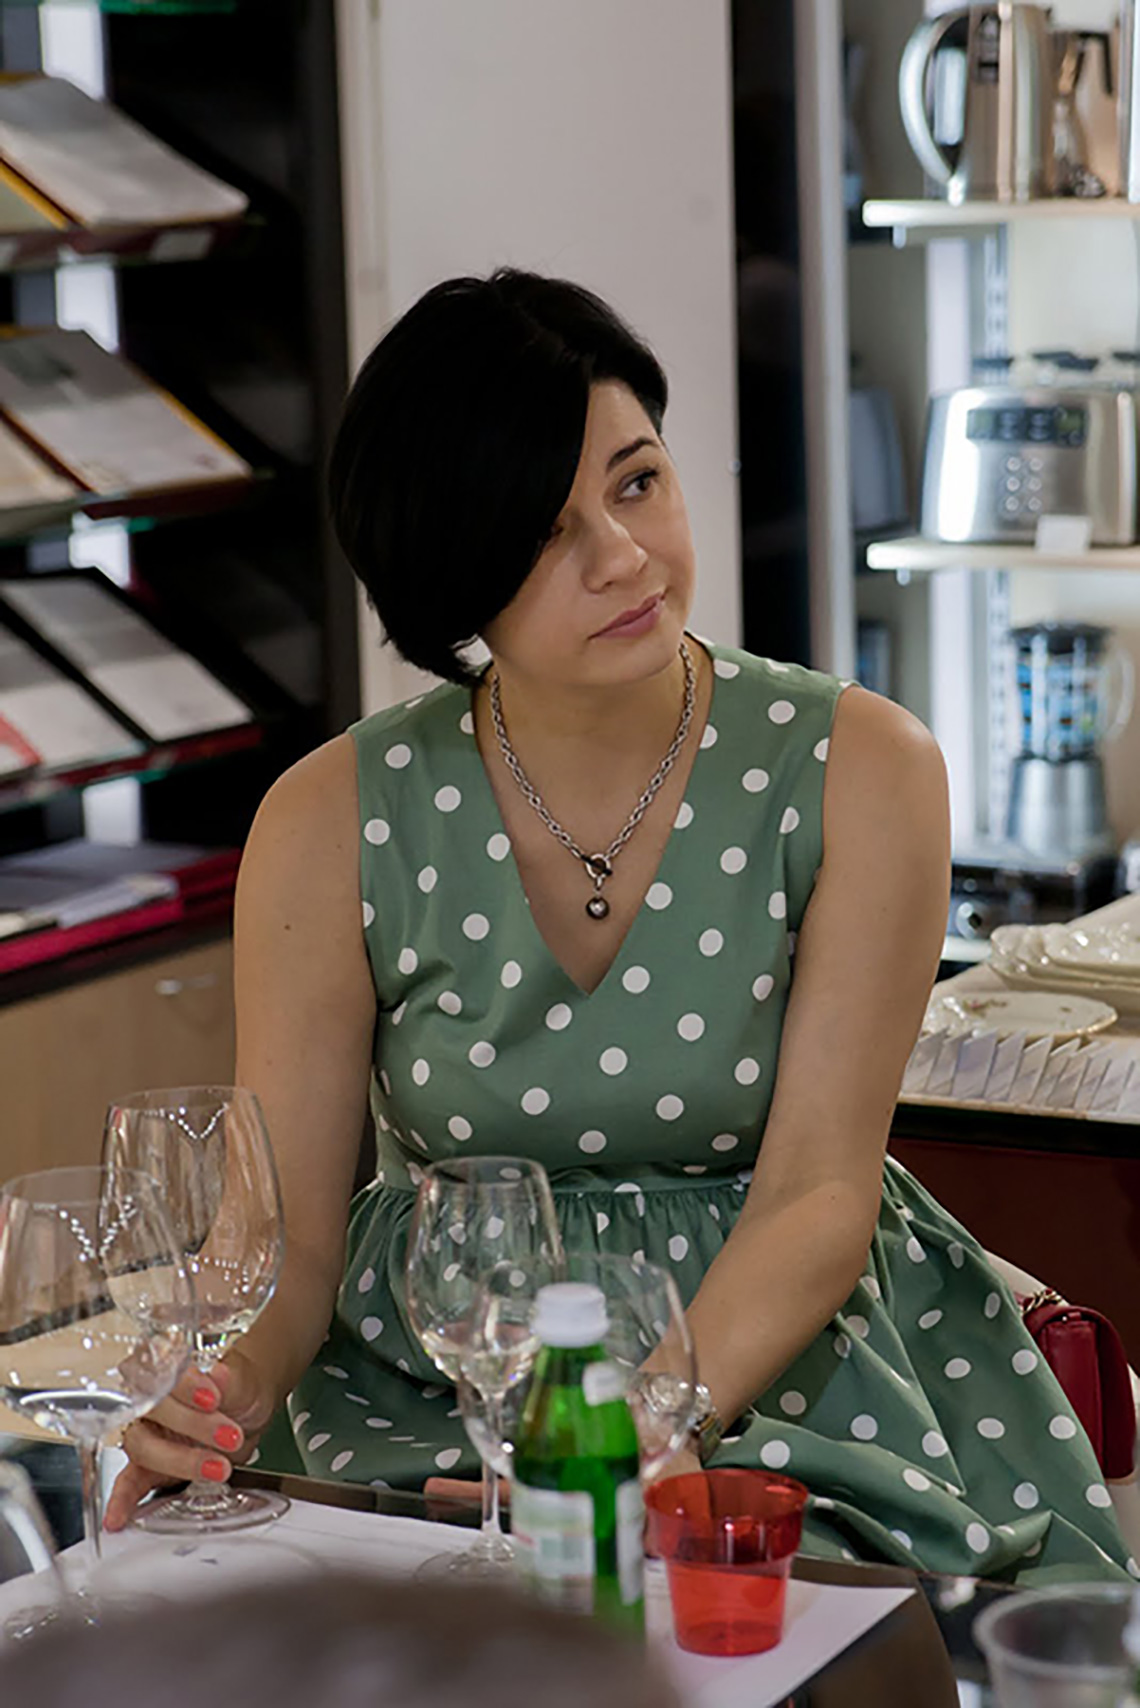 Бокалы Riedel на дегустации вин для 12 персон: как вино раскрывает свой букет и аромат в бокалах разной формы. Кулинарная школа «Мои друзья» в Одессе.